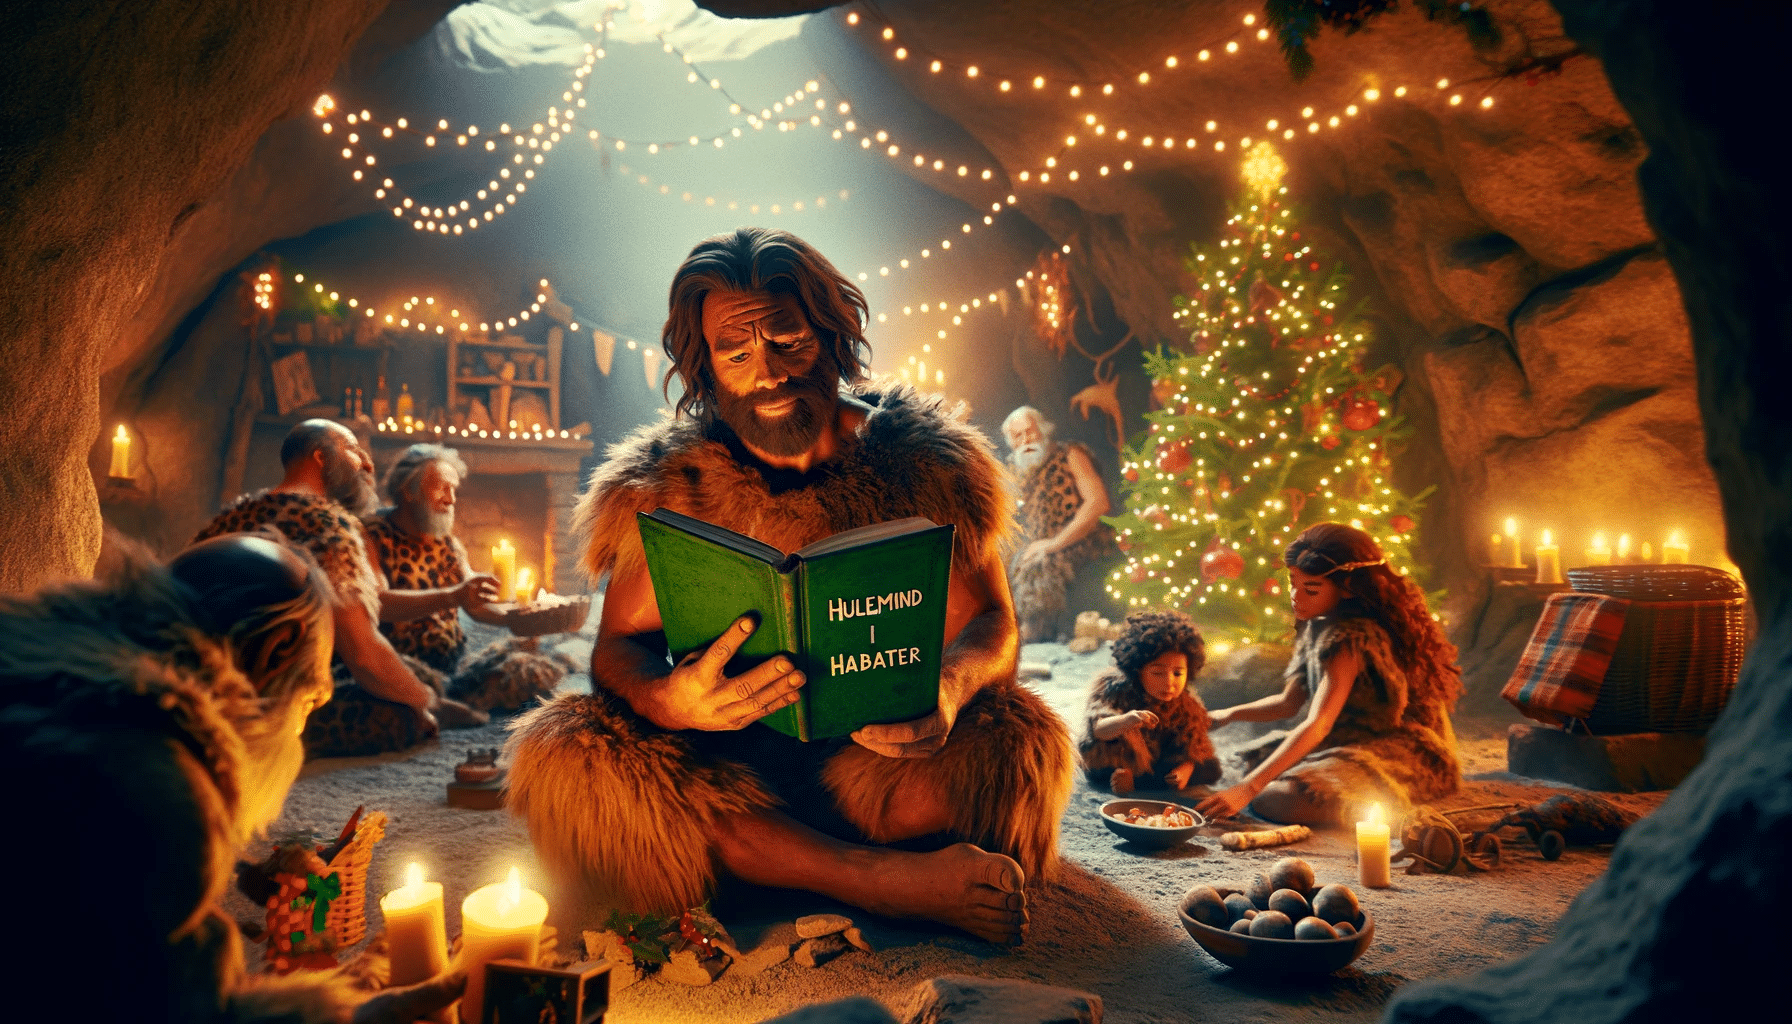 Hulemand læser Hulemænd i habitter mens familien juler i baggrunden